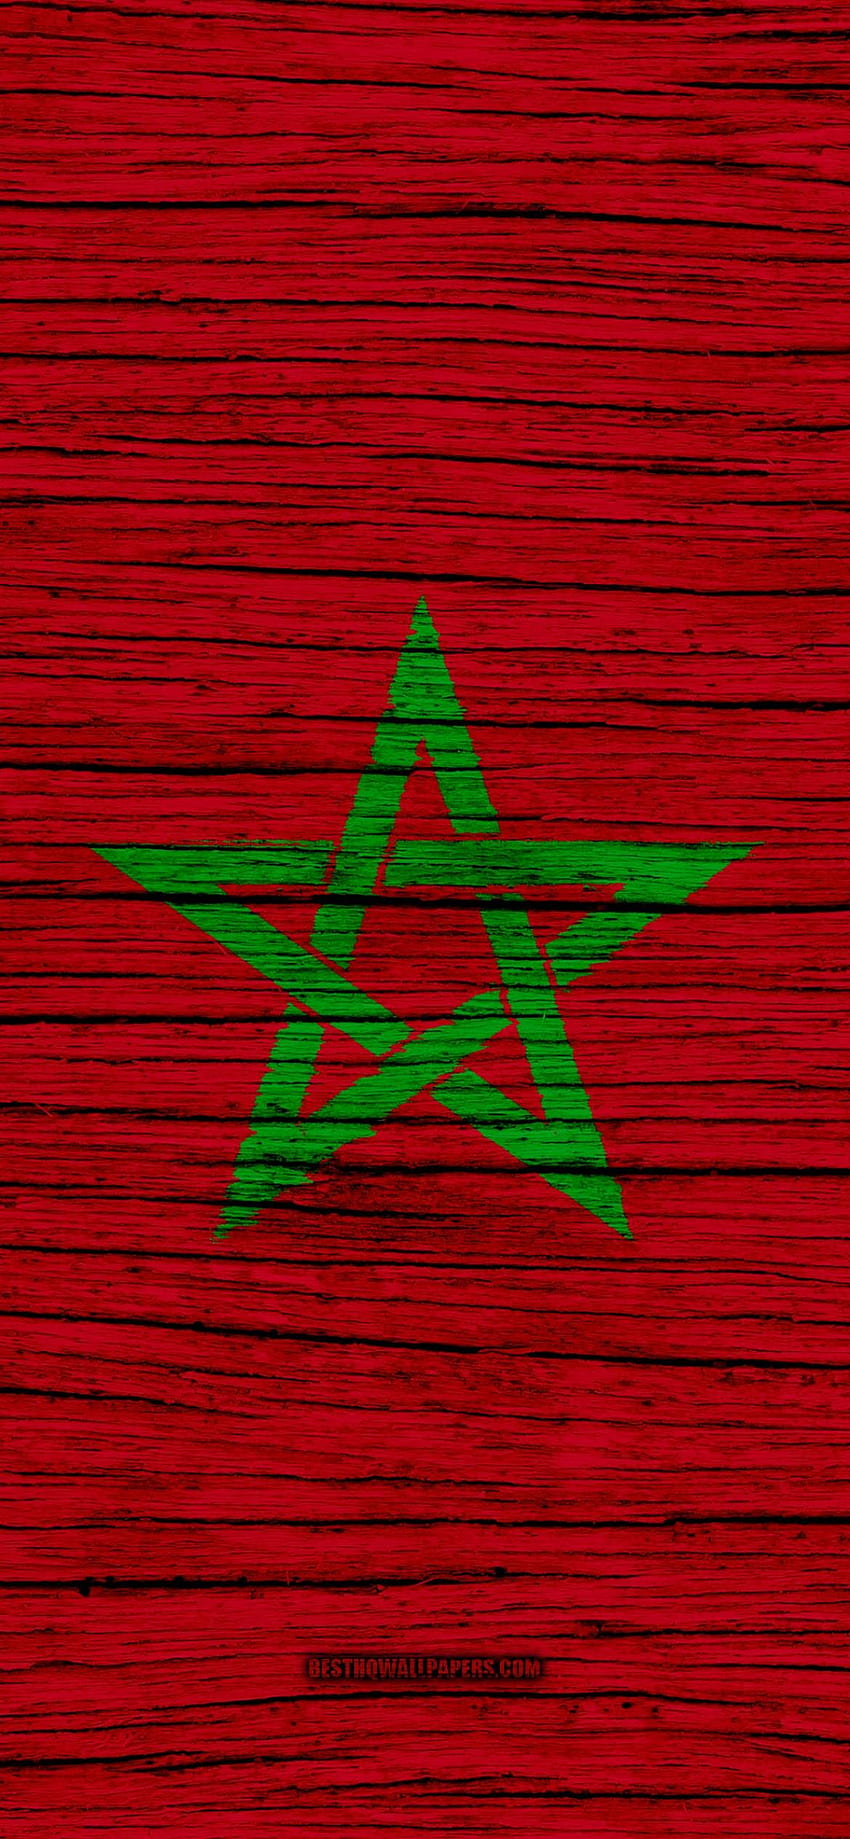 Bandera de Marruecos 2020 - GetWalls.io, Bandera de Marruecos fondo de pantalla del teléfono